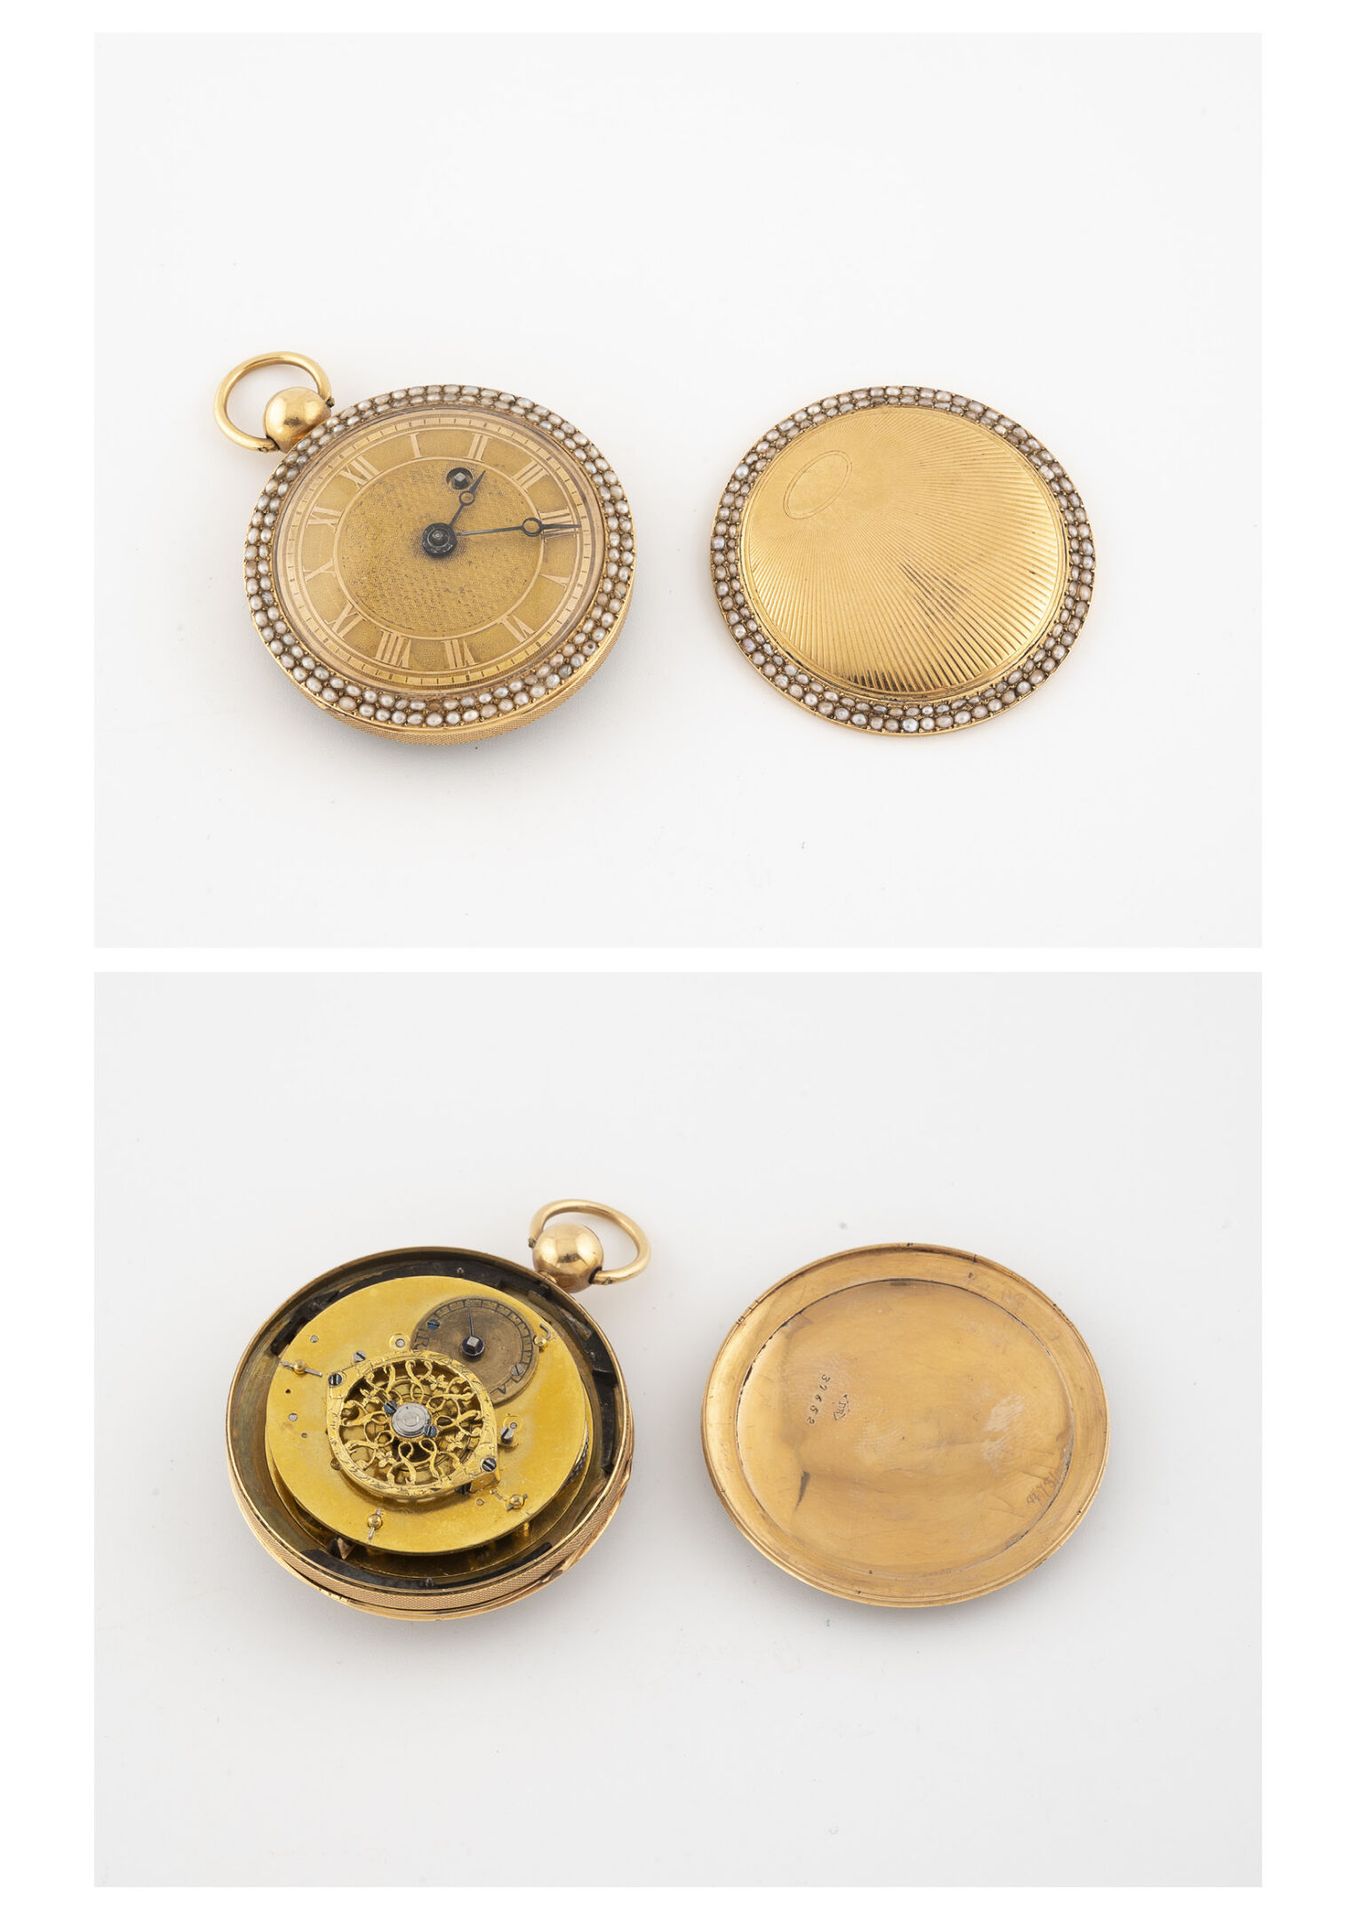 Null Piccolo orologio da tasca a galletto in oro giallo (750).

Coperchio poster&hellip;